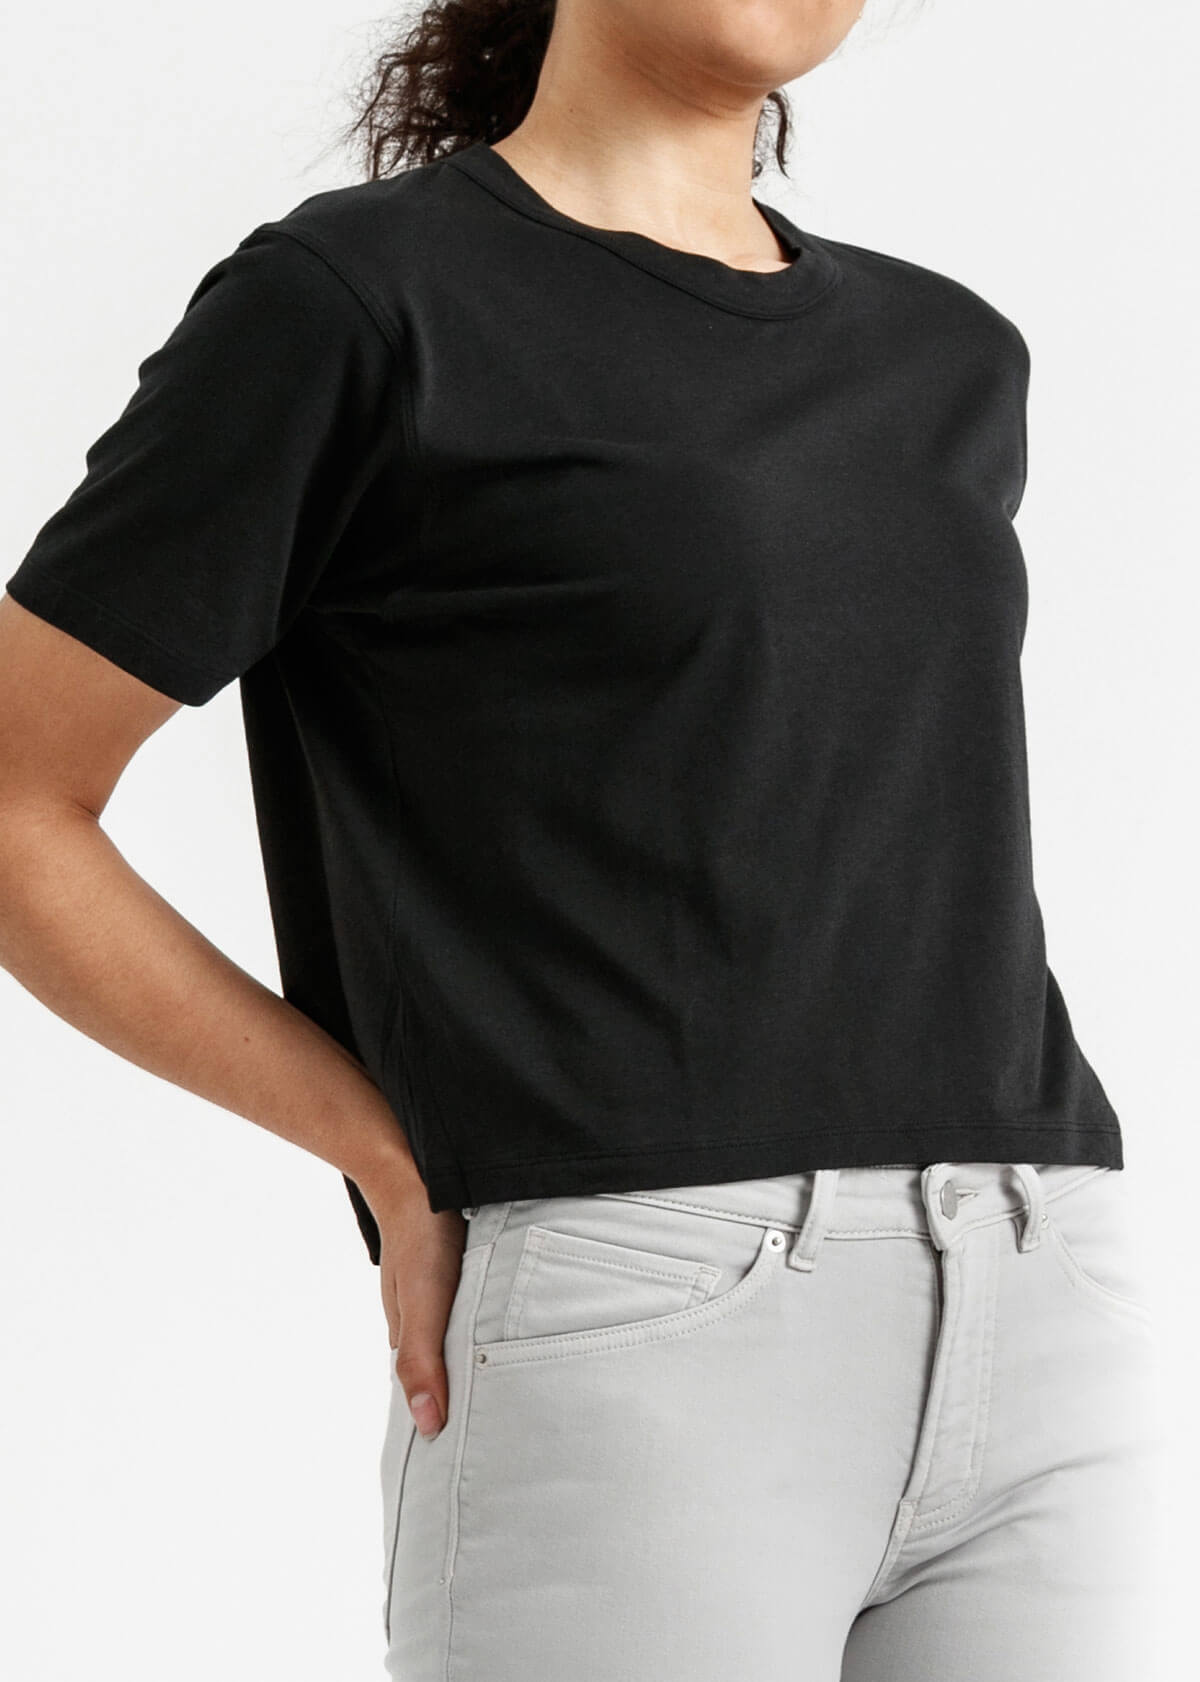 Women's black lightweight soft crop tshirt front